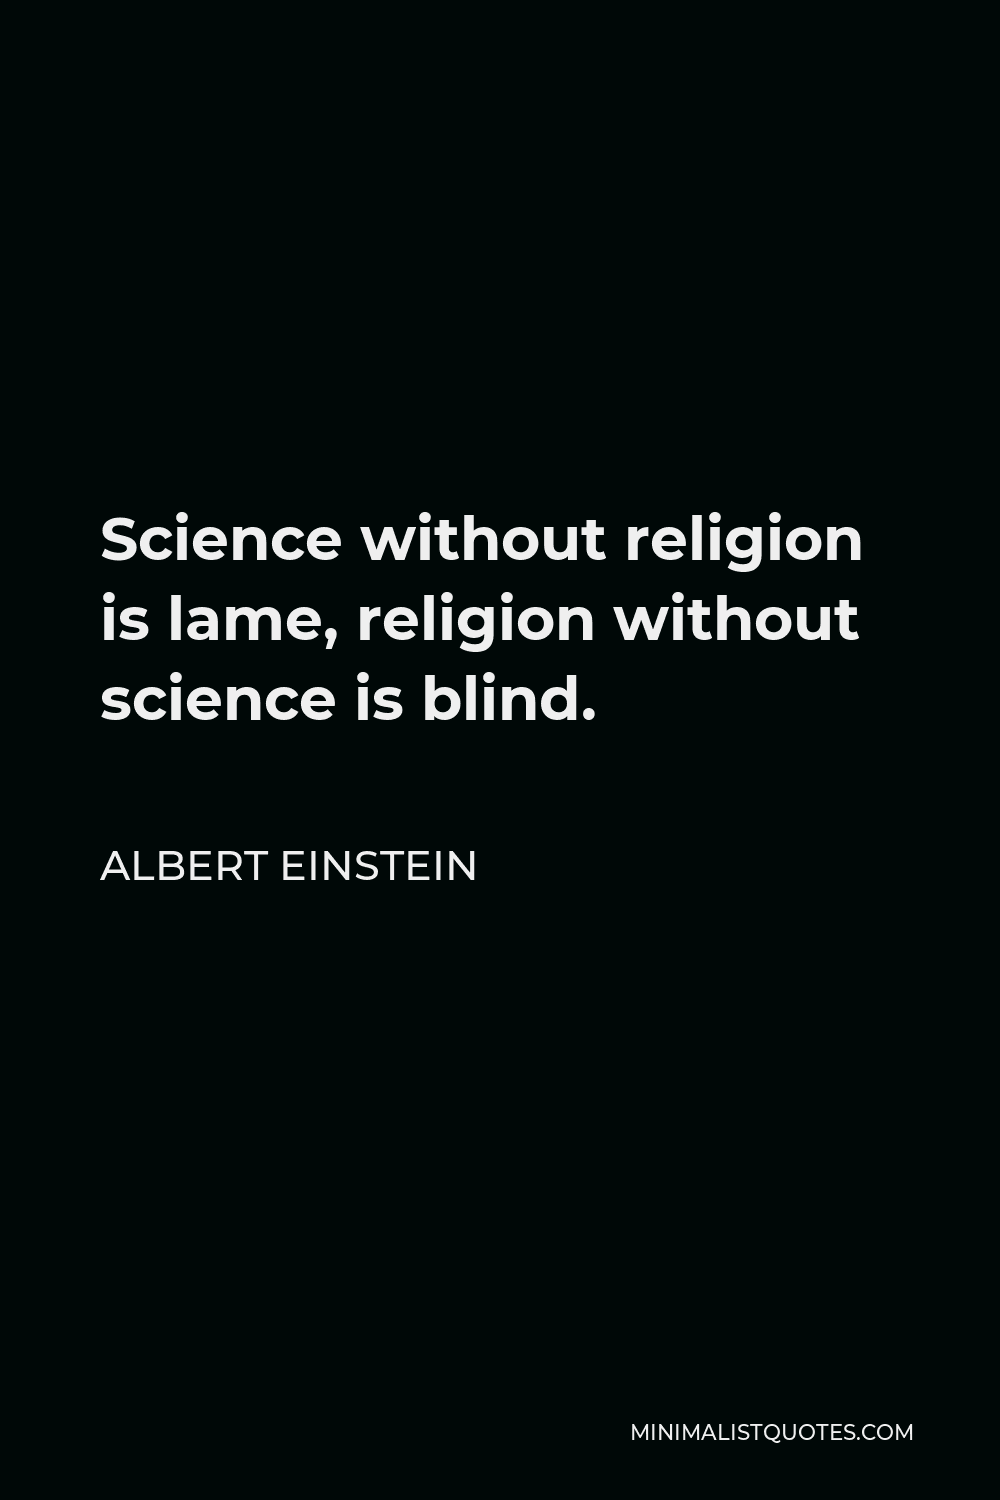 Albert Einstein Quote - Science without religion is lame, religion without science is blind.